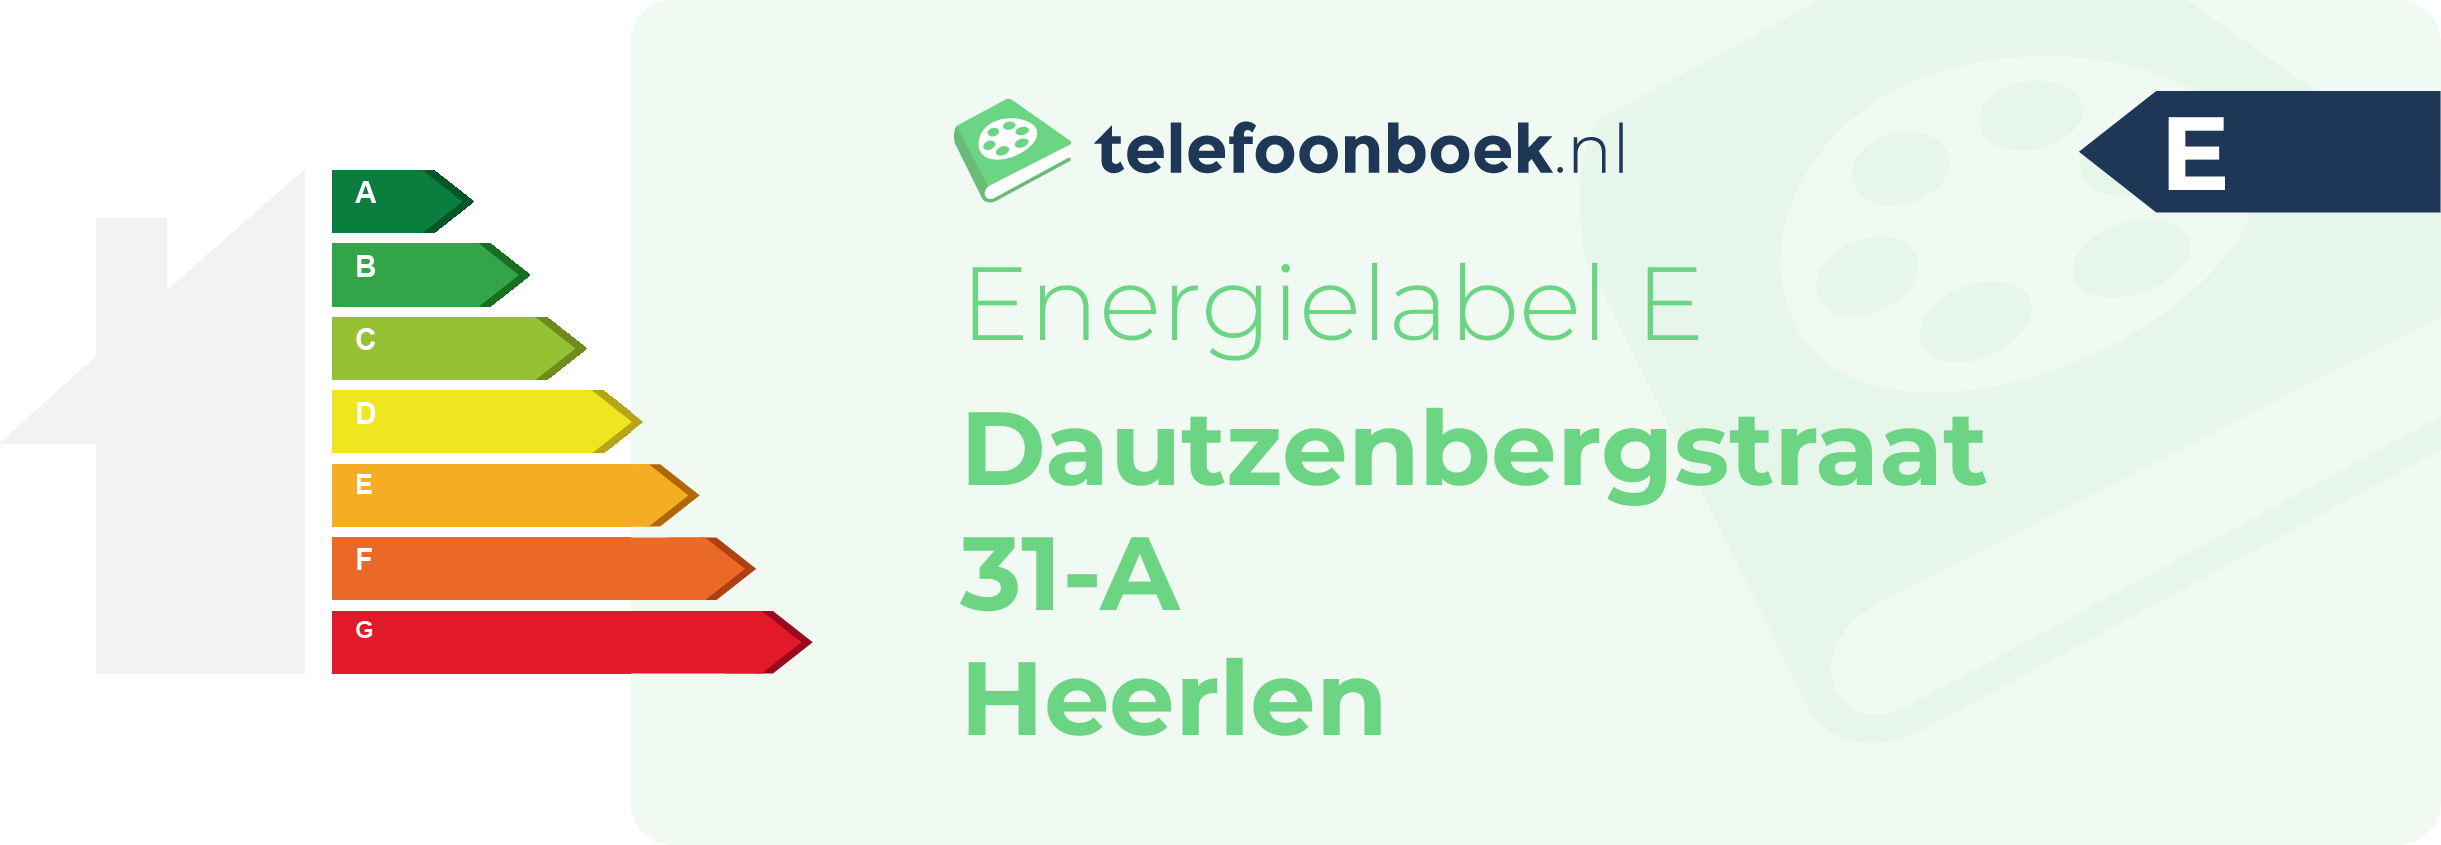 Energielabel Dautzenbergstraat 31-A Heerlen